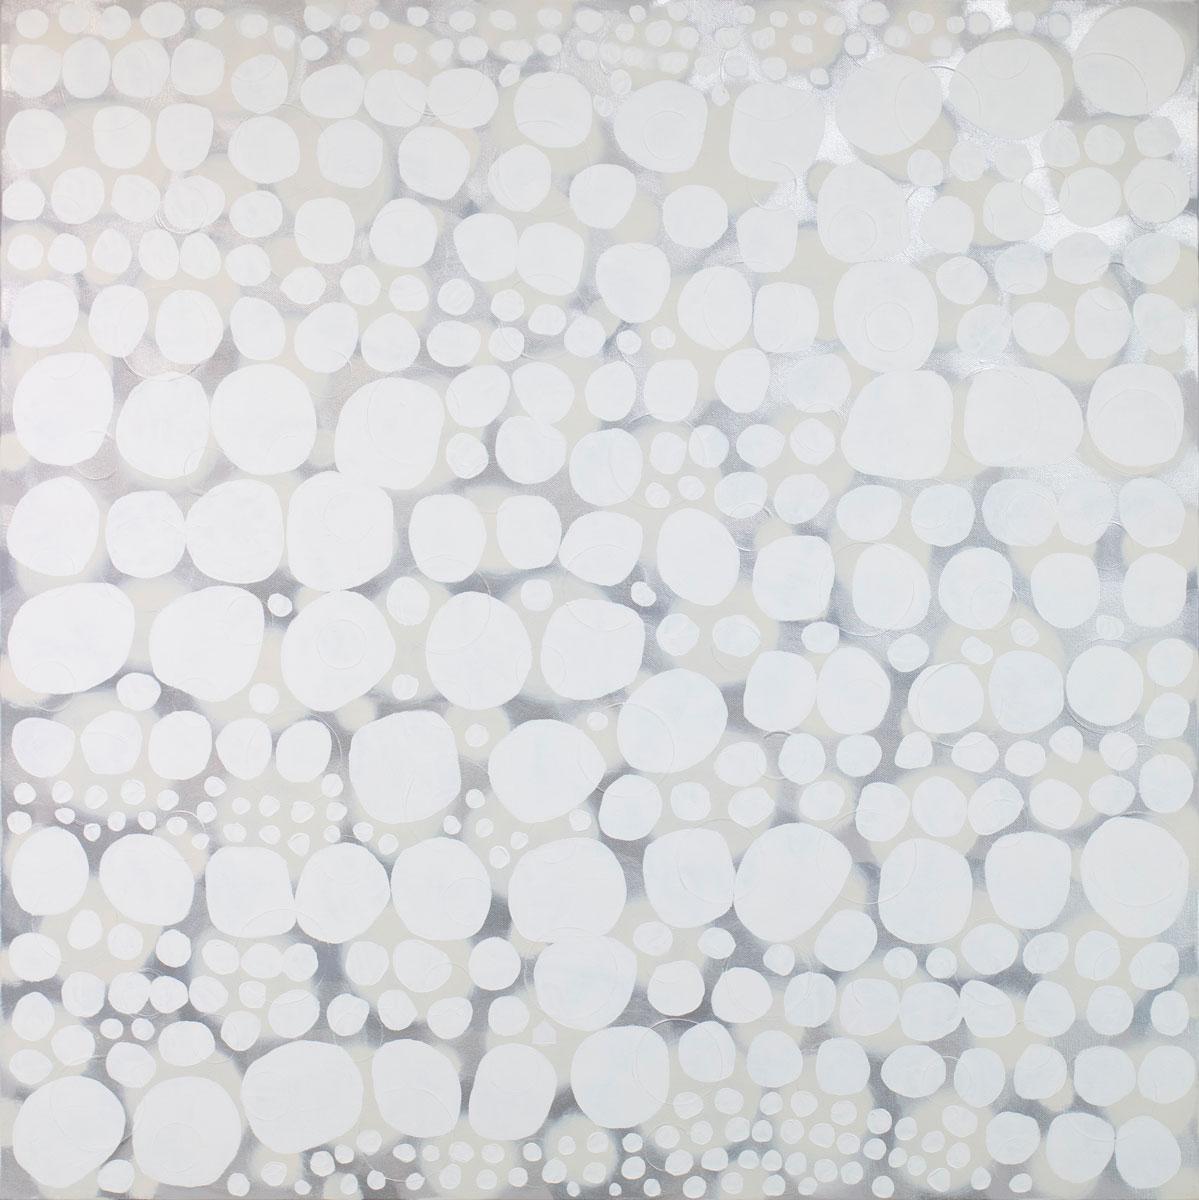 Ce grand tableau abstrait de Sofie Swann présente une palette neutre et légère, avec des formes circulaires blanches superposées sur un fond gris brumeux et crème, subtilement métallique. Cette peinture est réalisée sur une toile enveloppée dans une